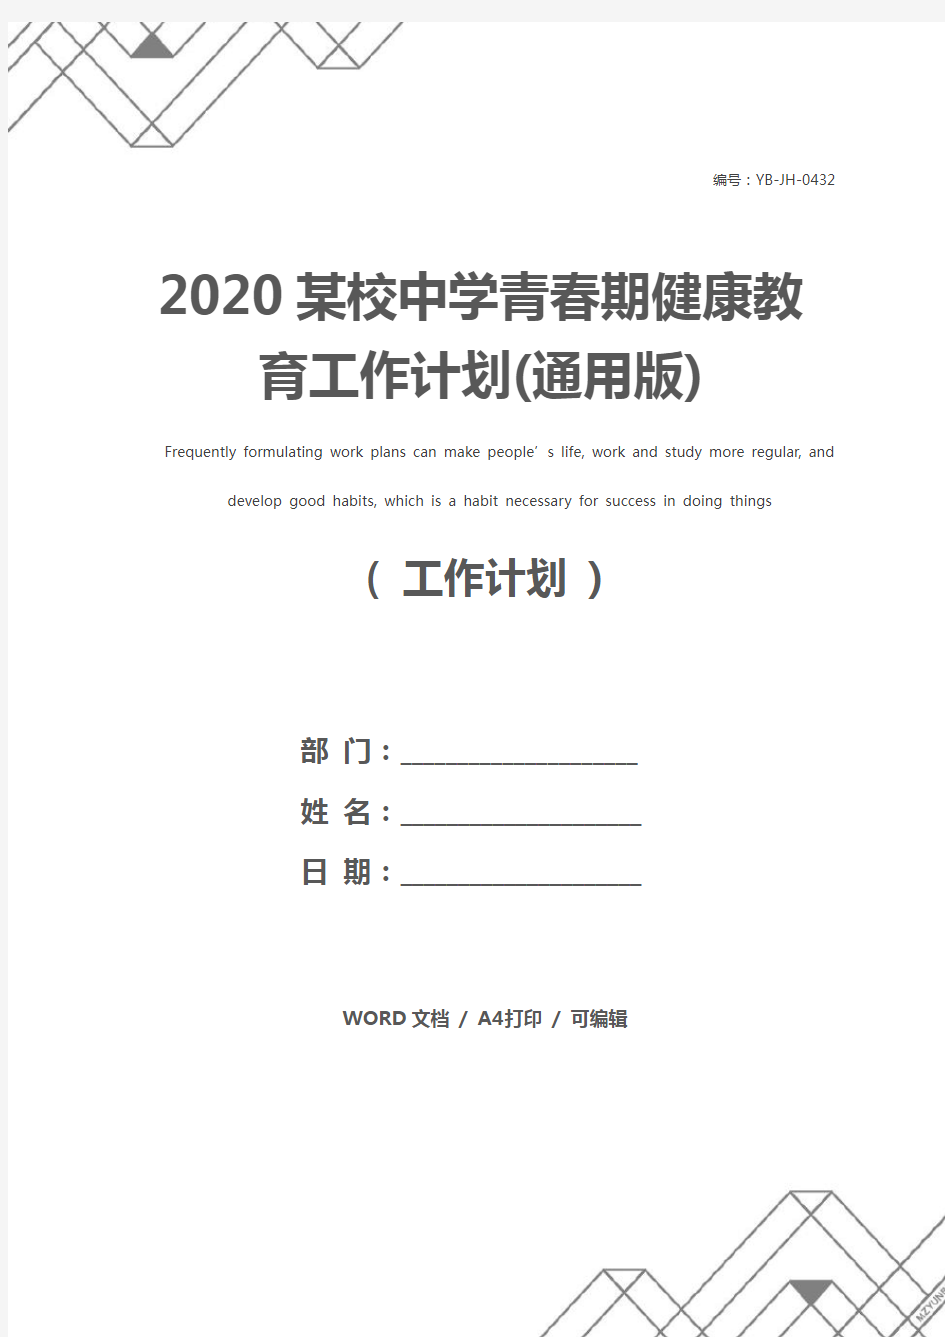 2020某校中学青春期健康教育工作计划(通用版)